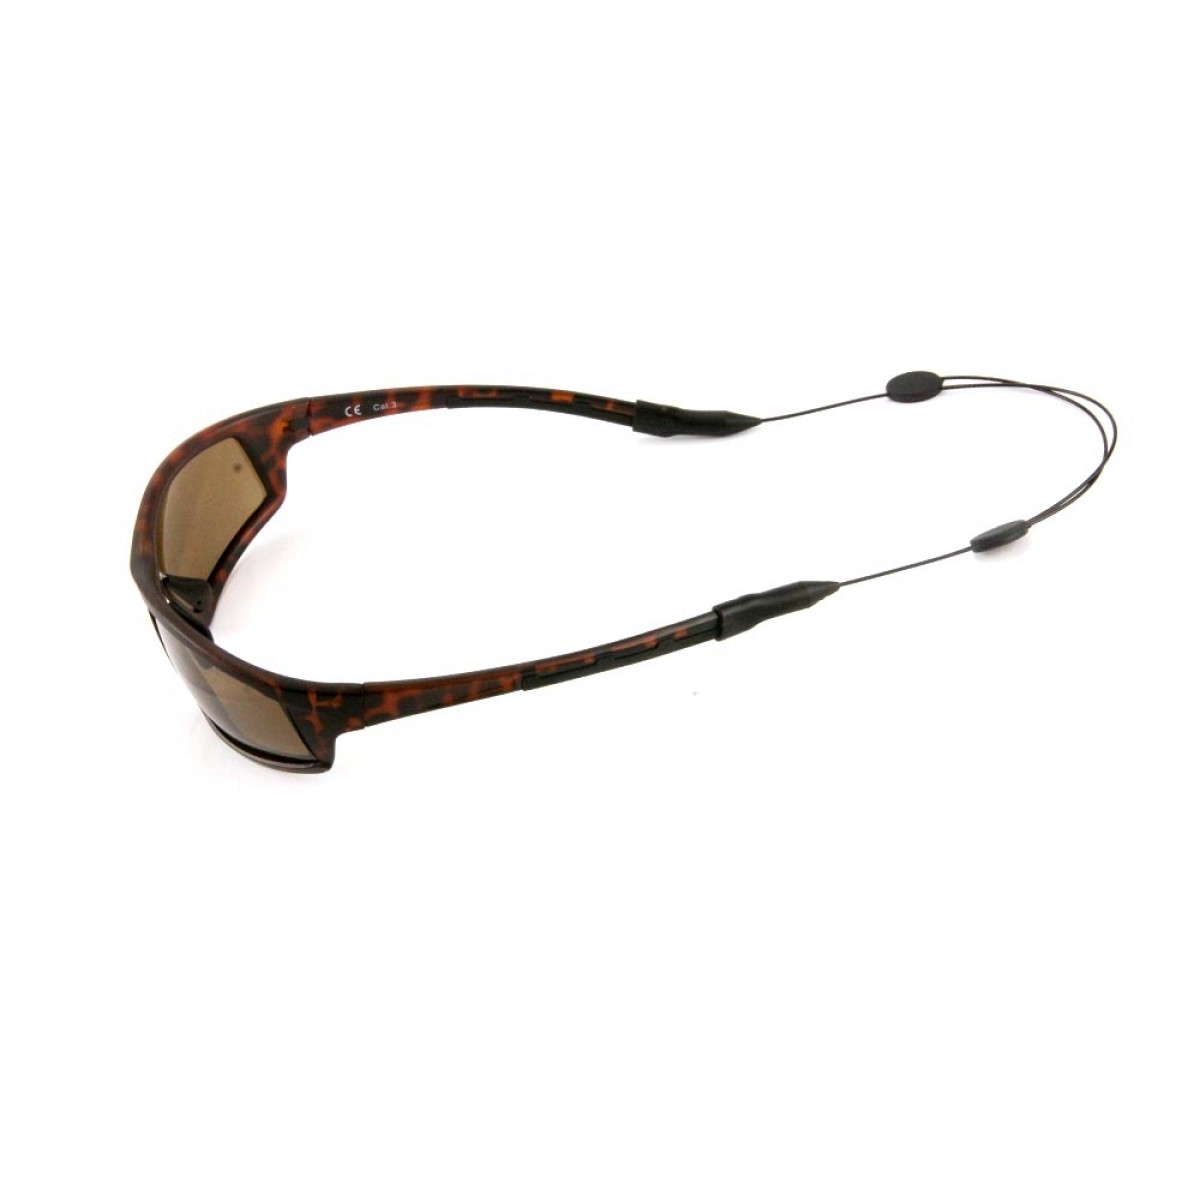 Verstellbares Brillensicherungsband